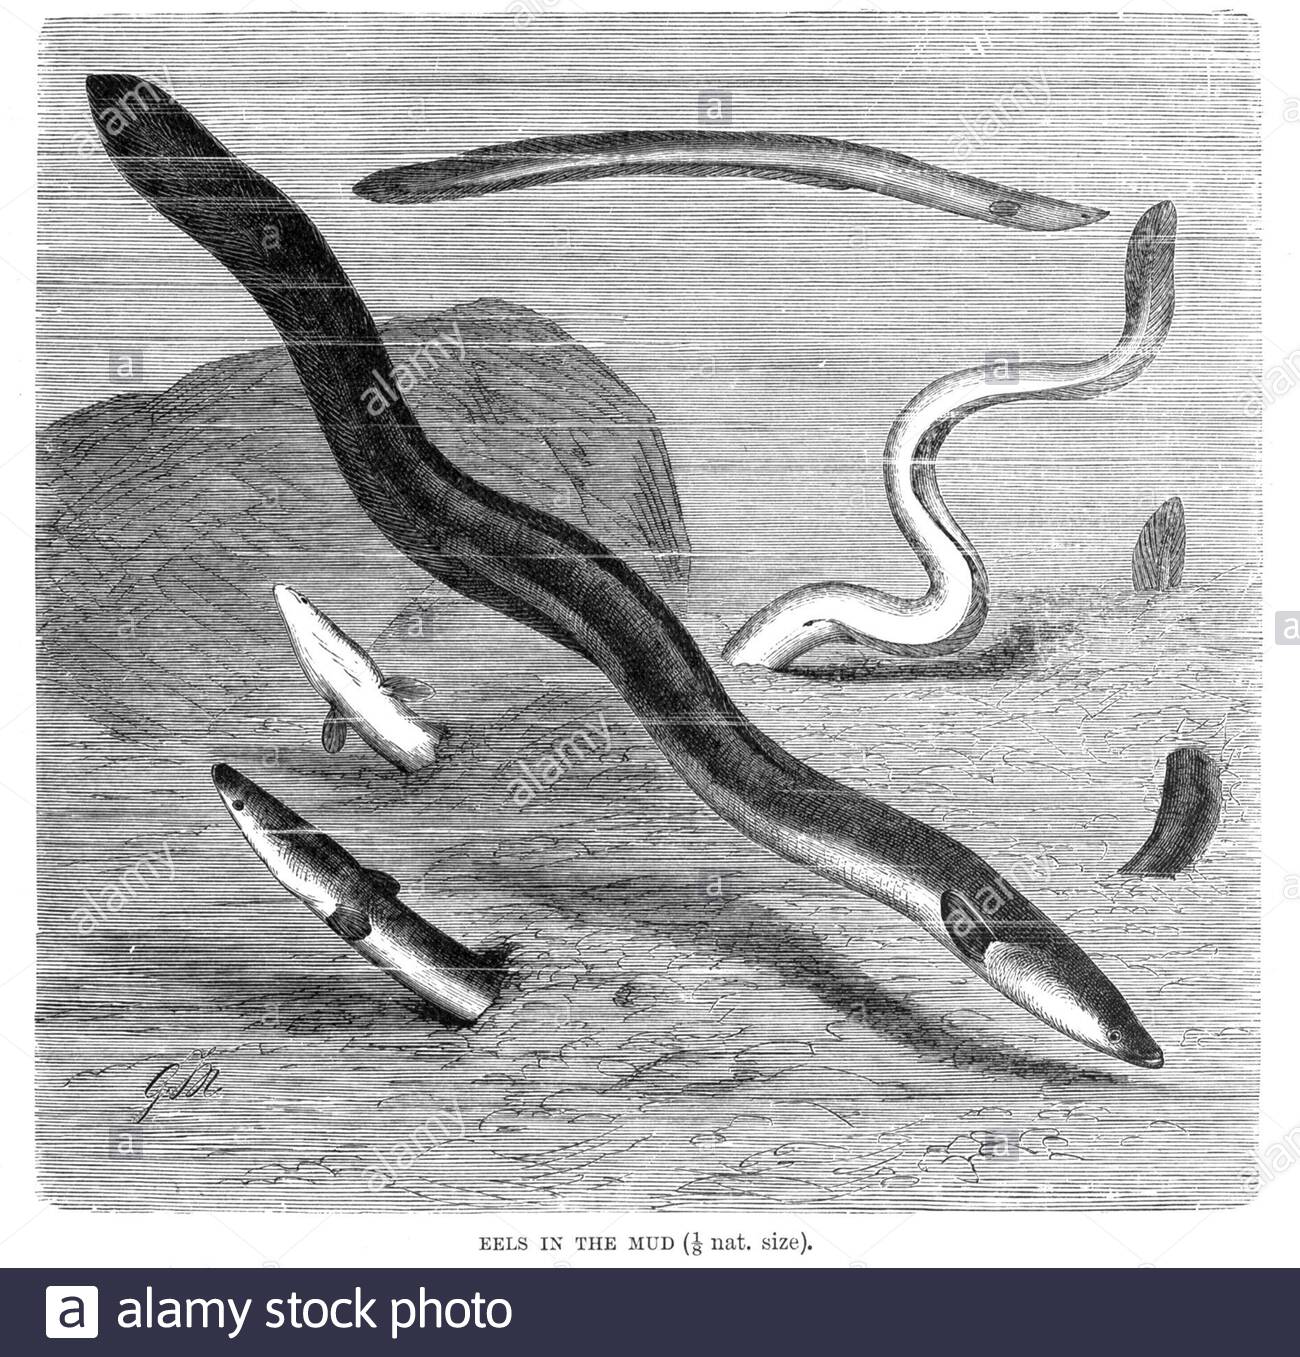 Anguille nel fango, illustrazione d'annata del 1896 Foto Stock